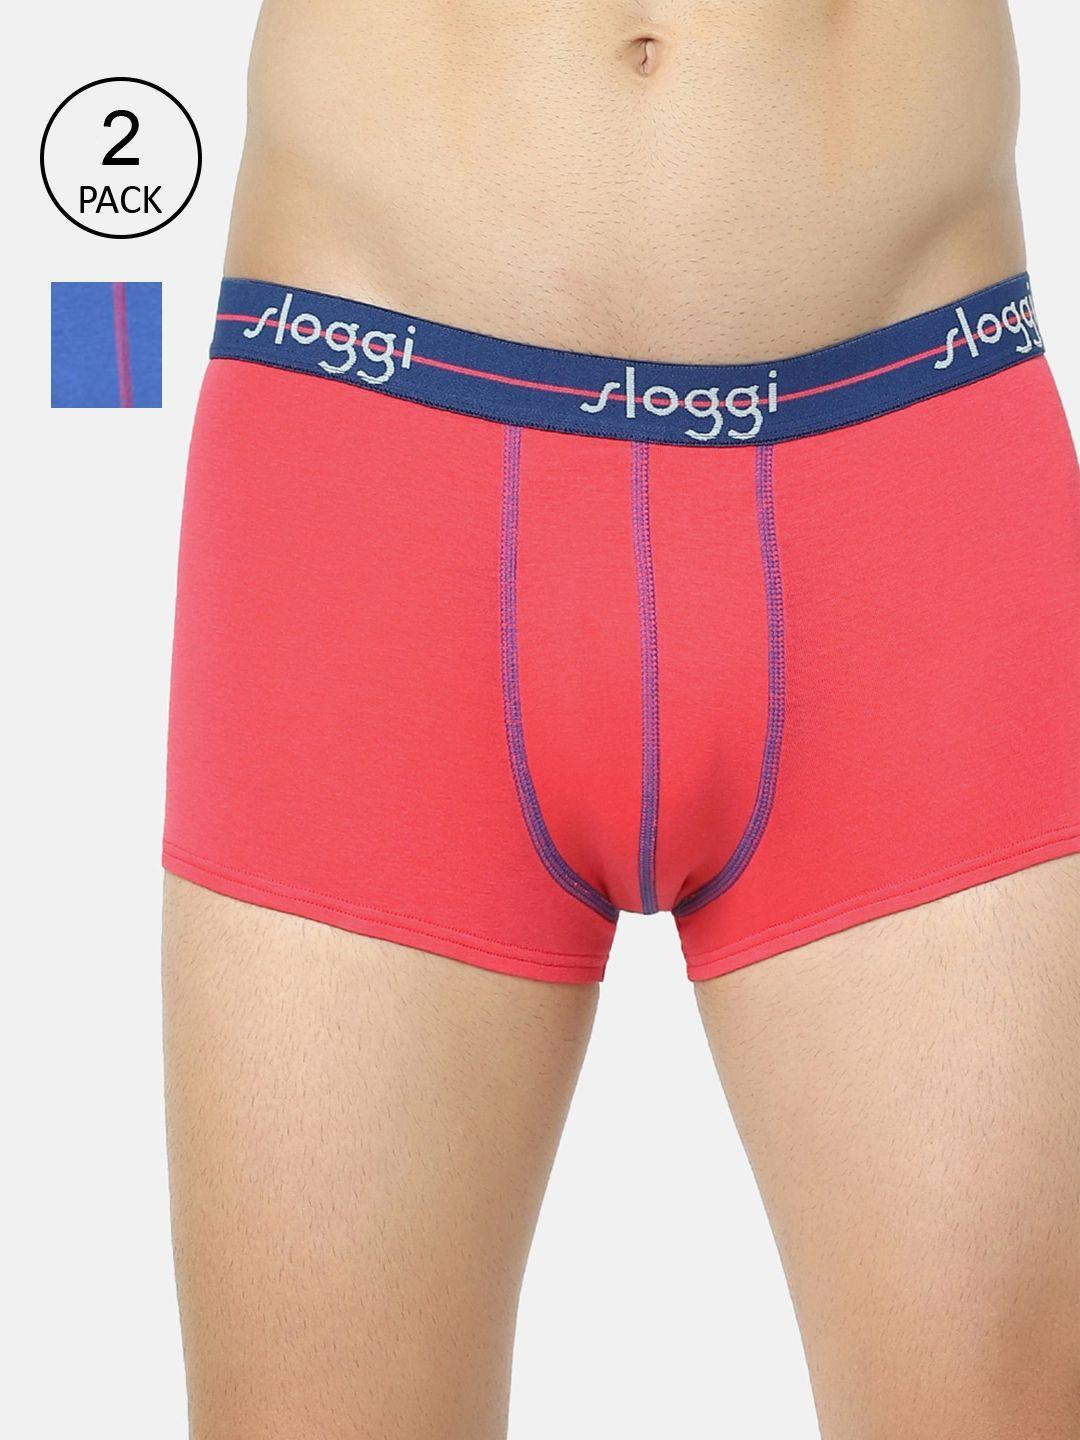 sloggi men pack of 2 pink & blue solid trunks